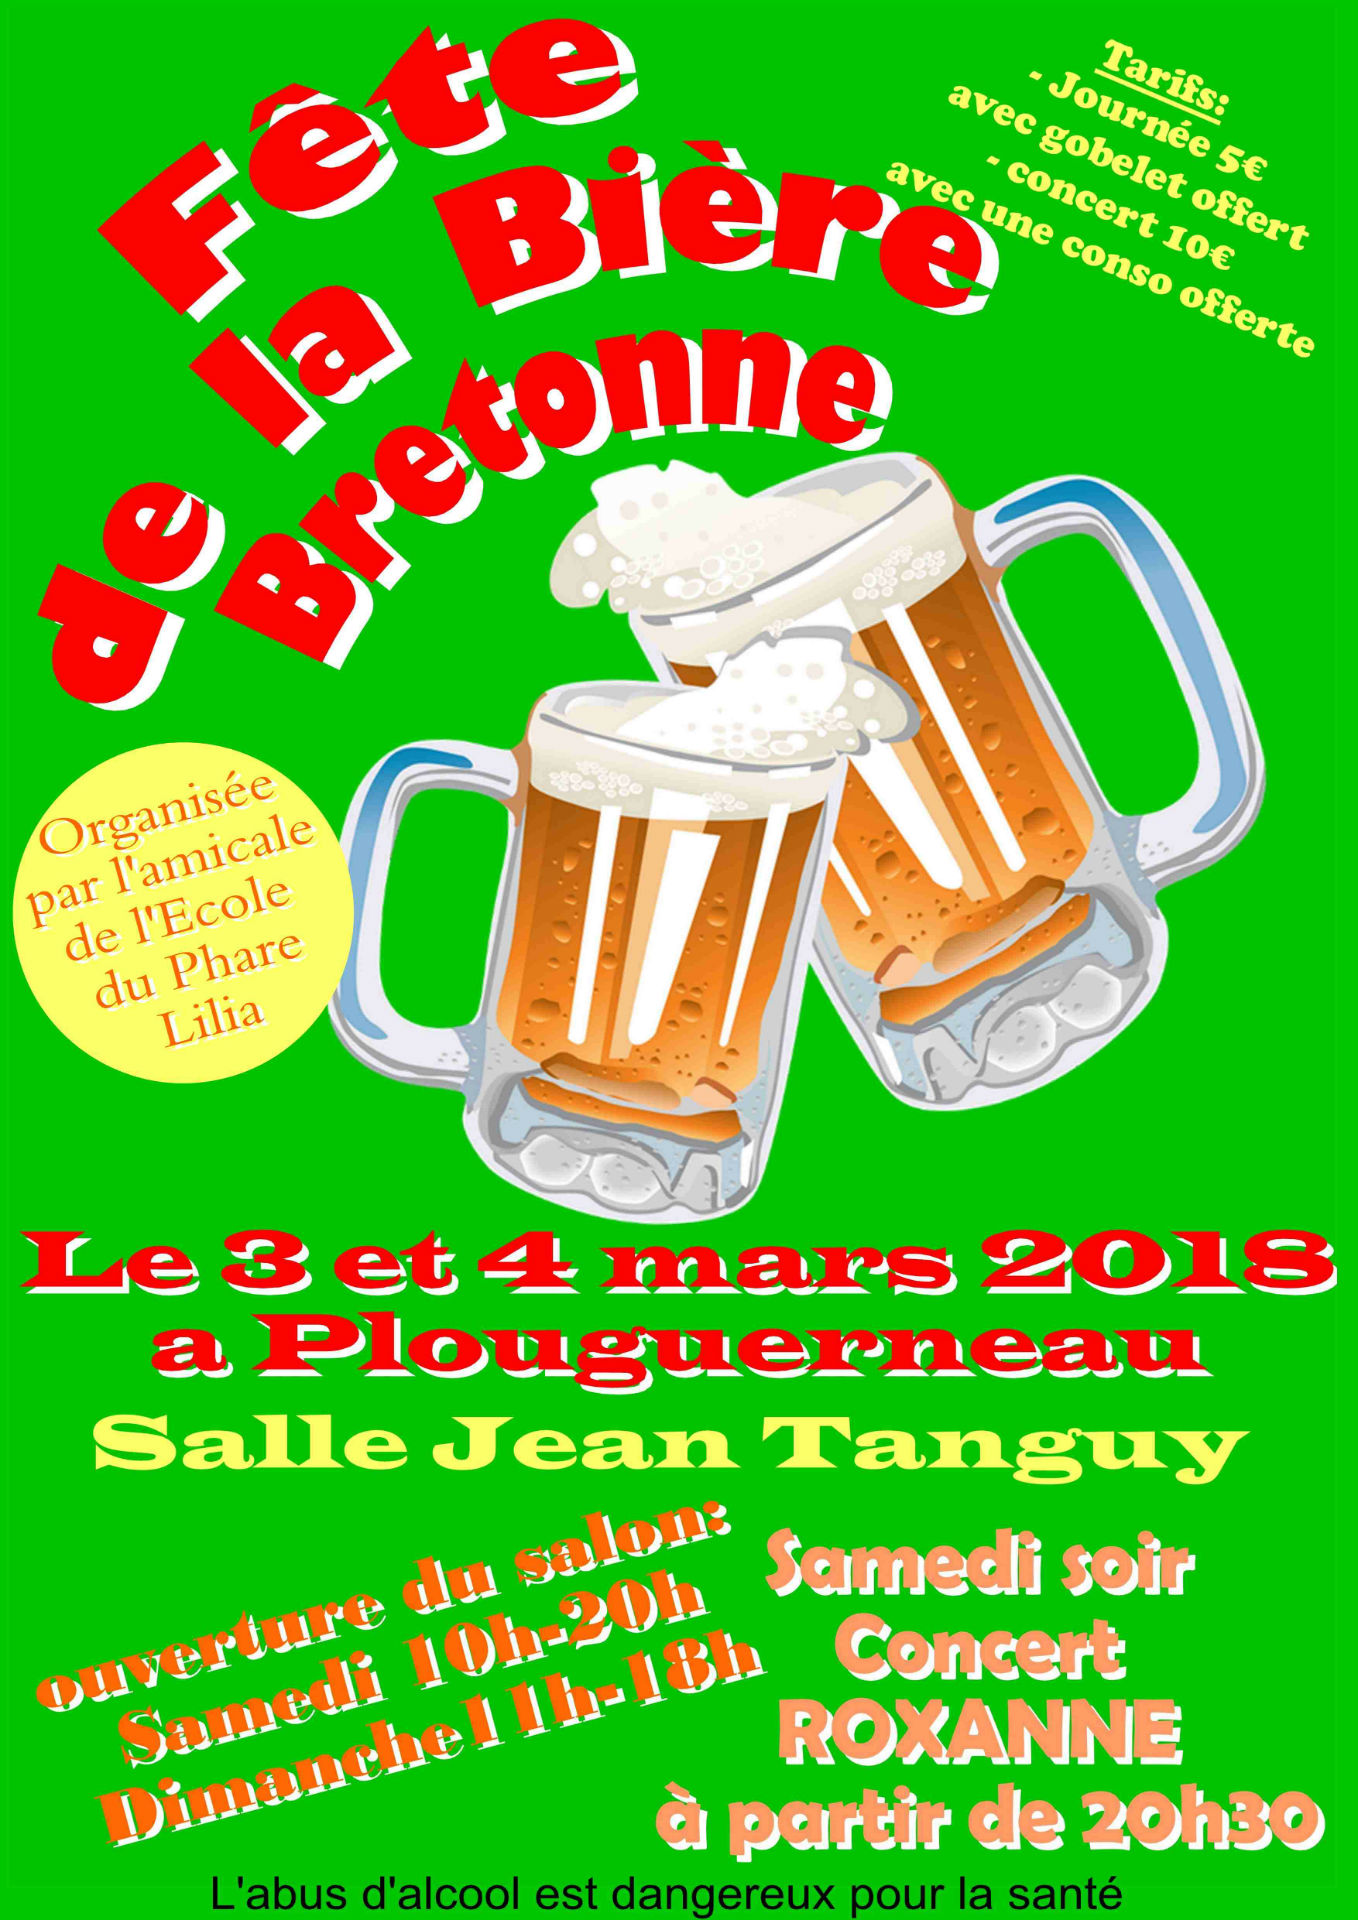 Fête de la bière bretonne à Plouguerneau 3 et 4 mars 2018